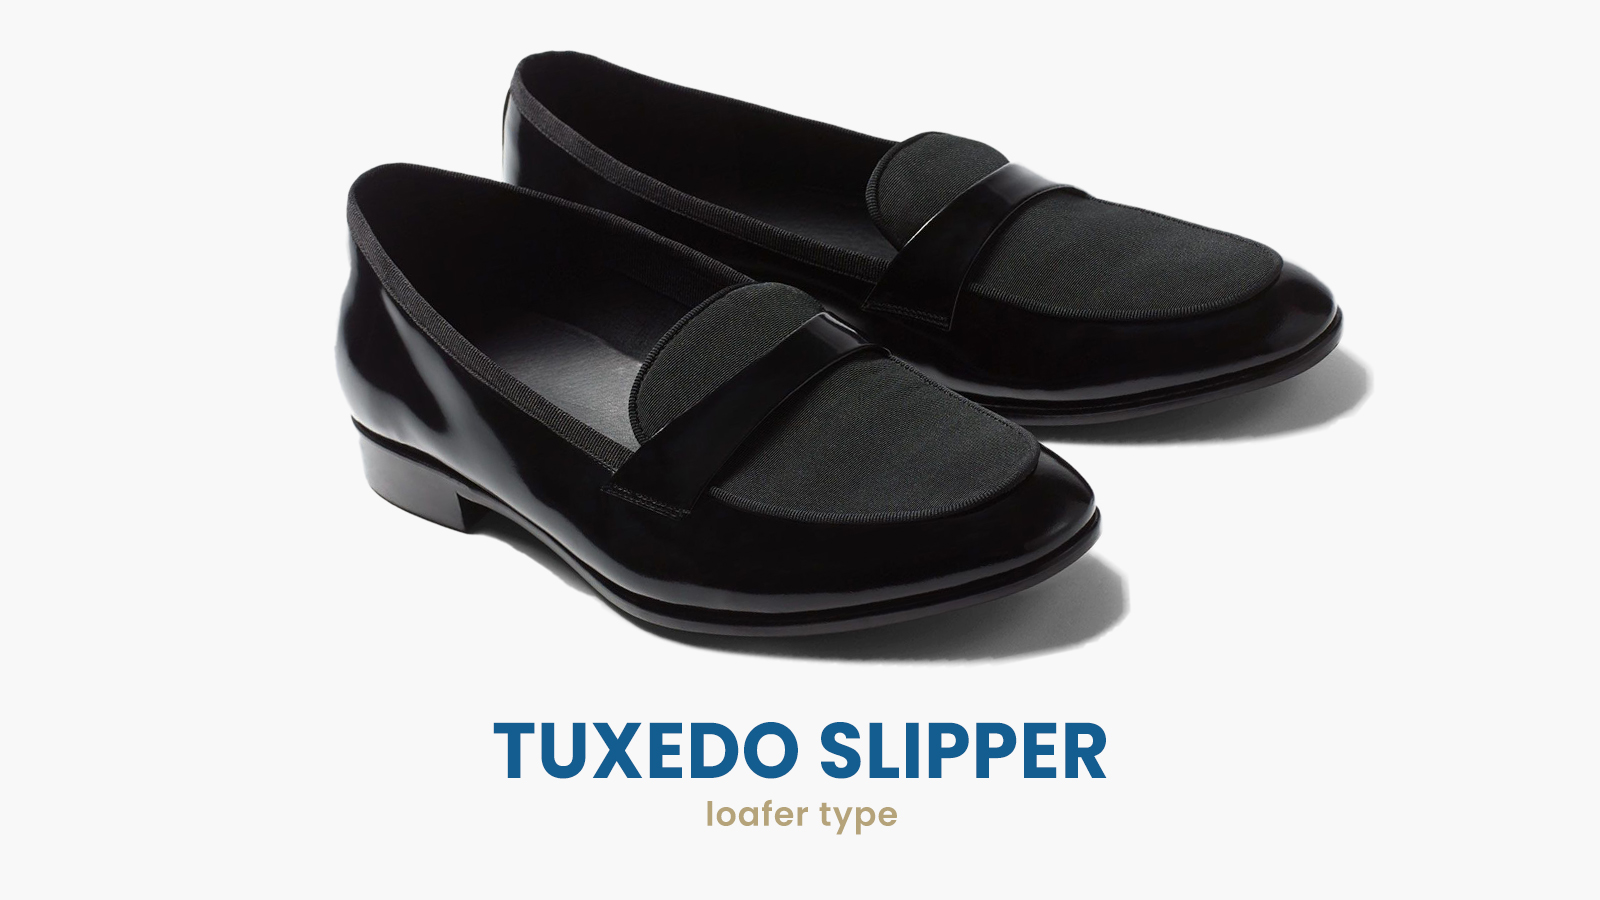 tuxedo slipper loafer